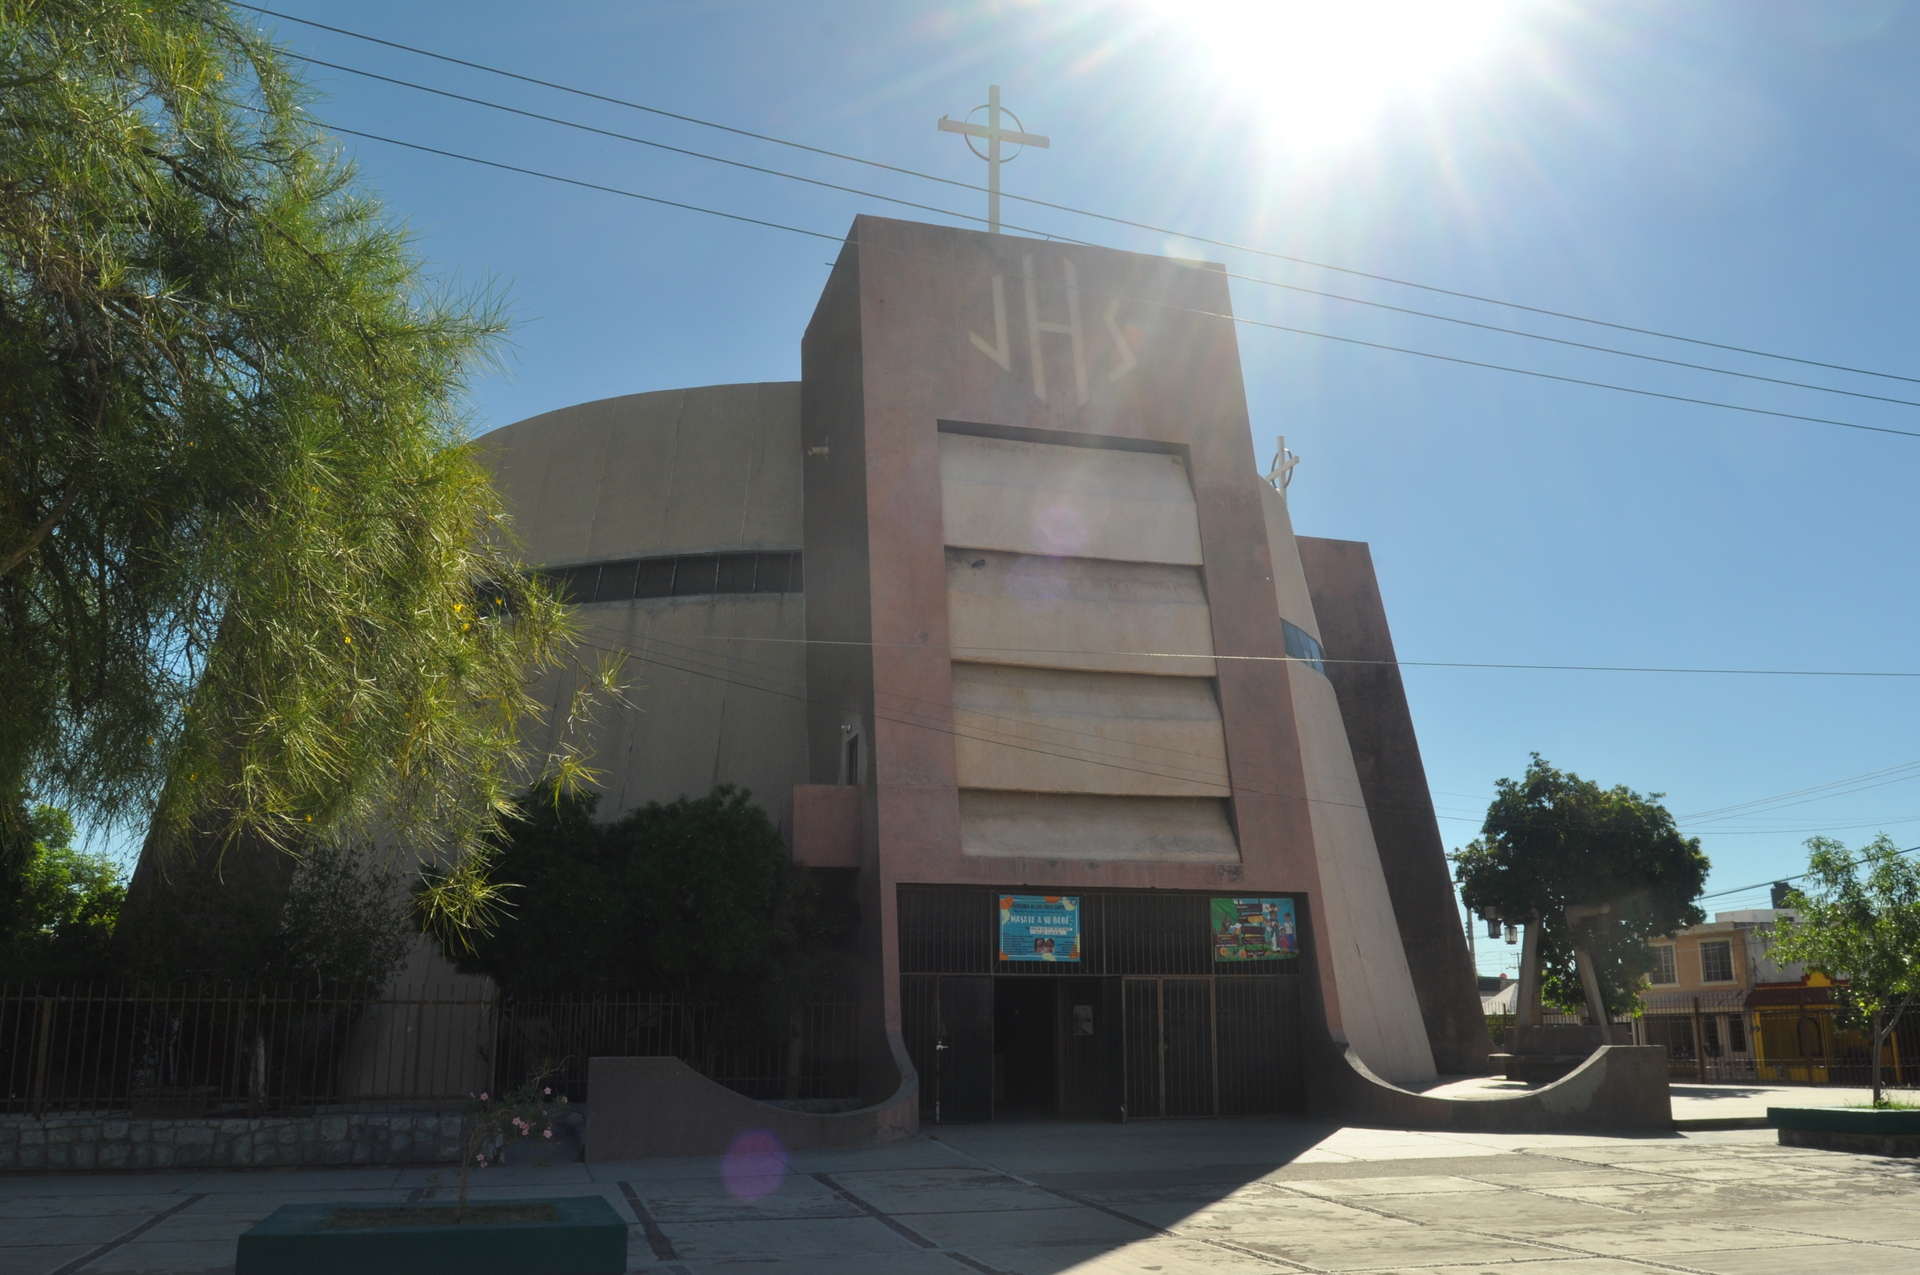 El punto de encuentro será el atrio de la parroquia de San Judas Tadeo de la colonia Las Torres, en un horario de 9:00 a 14:00 horas. (ARCHIVO)